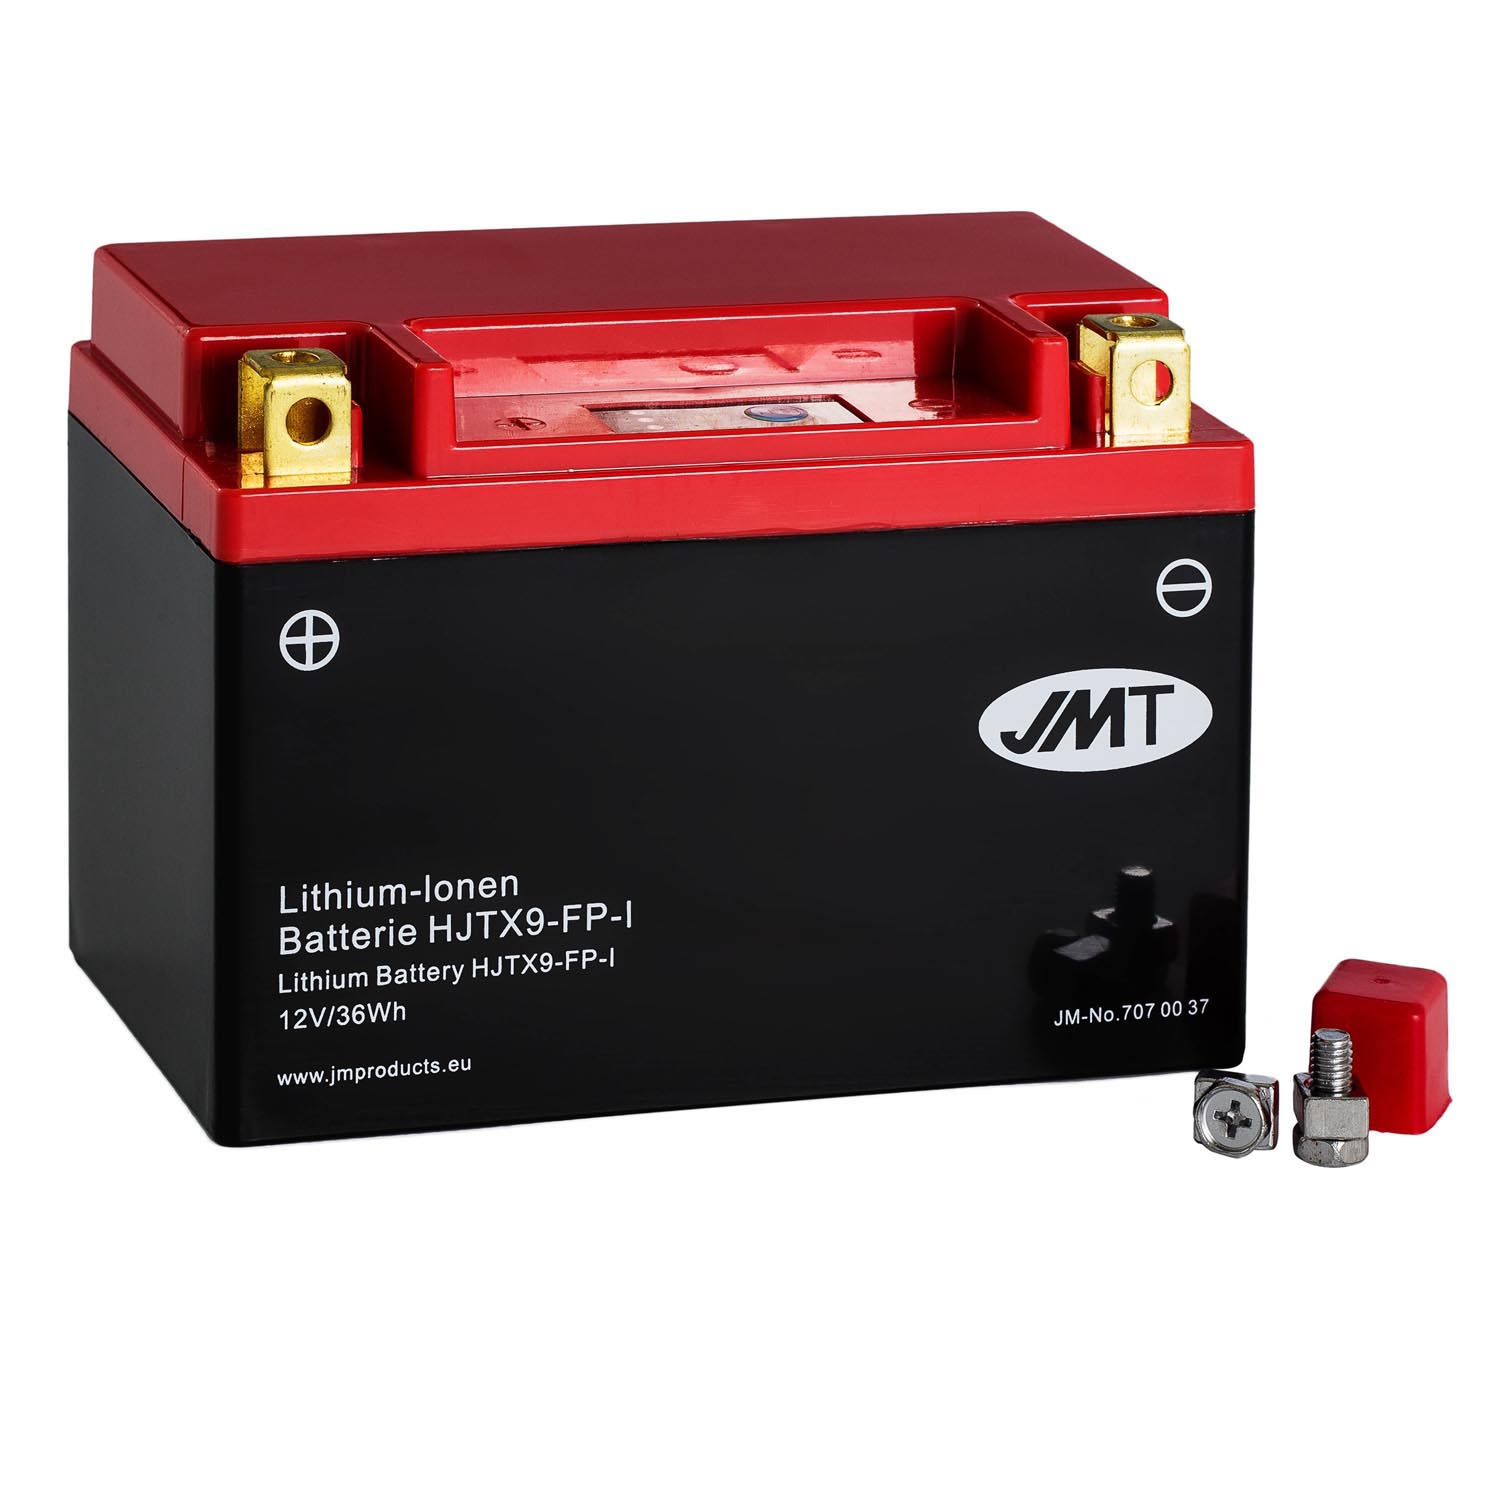 JMT Lithium-Ionen-Motorrad-Batterie HJTX9-FP 12V